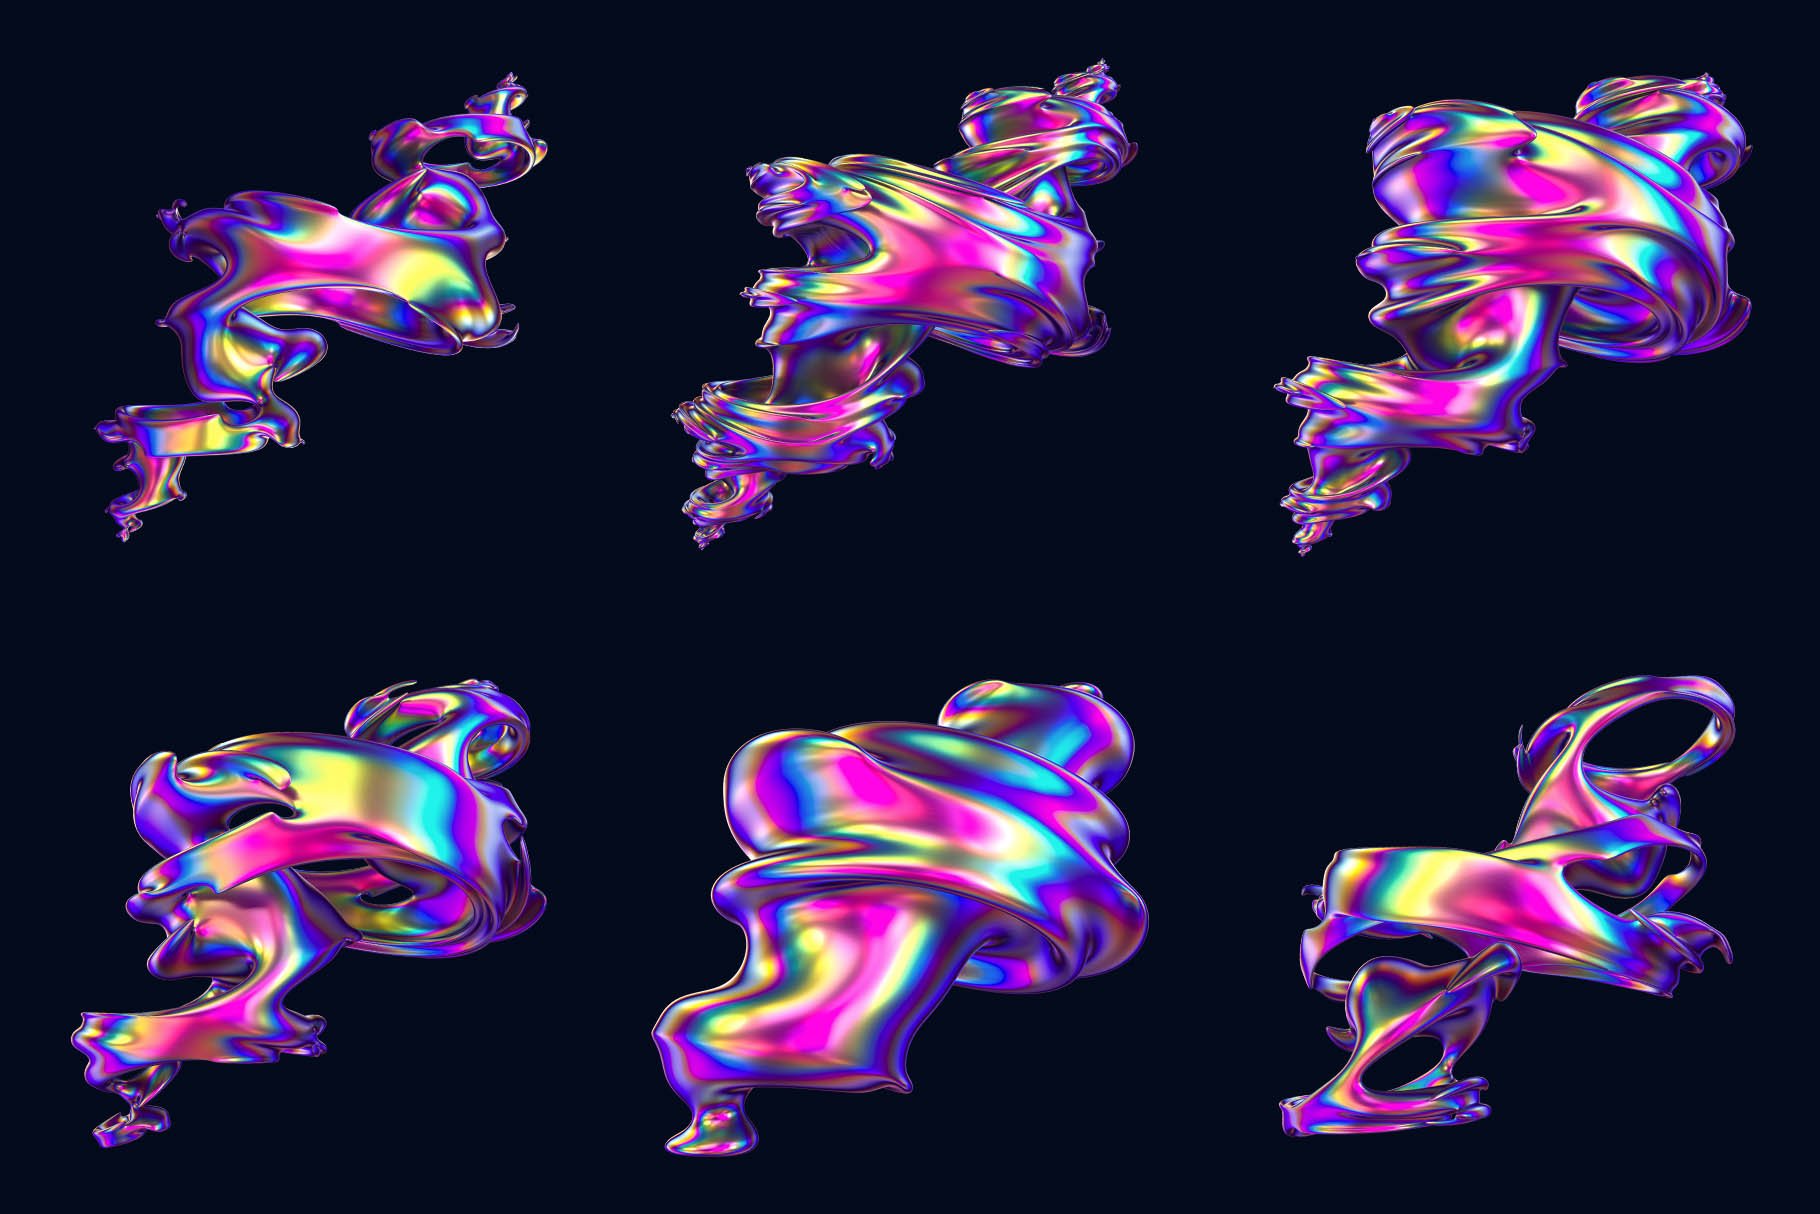 24+高级全息霓虹抽象旋风扭曲形状图案 Hyper Abstract Cyclone Shapes 图片素材 第4张